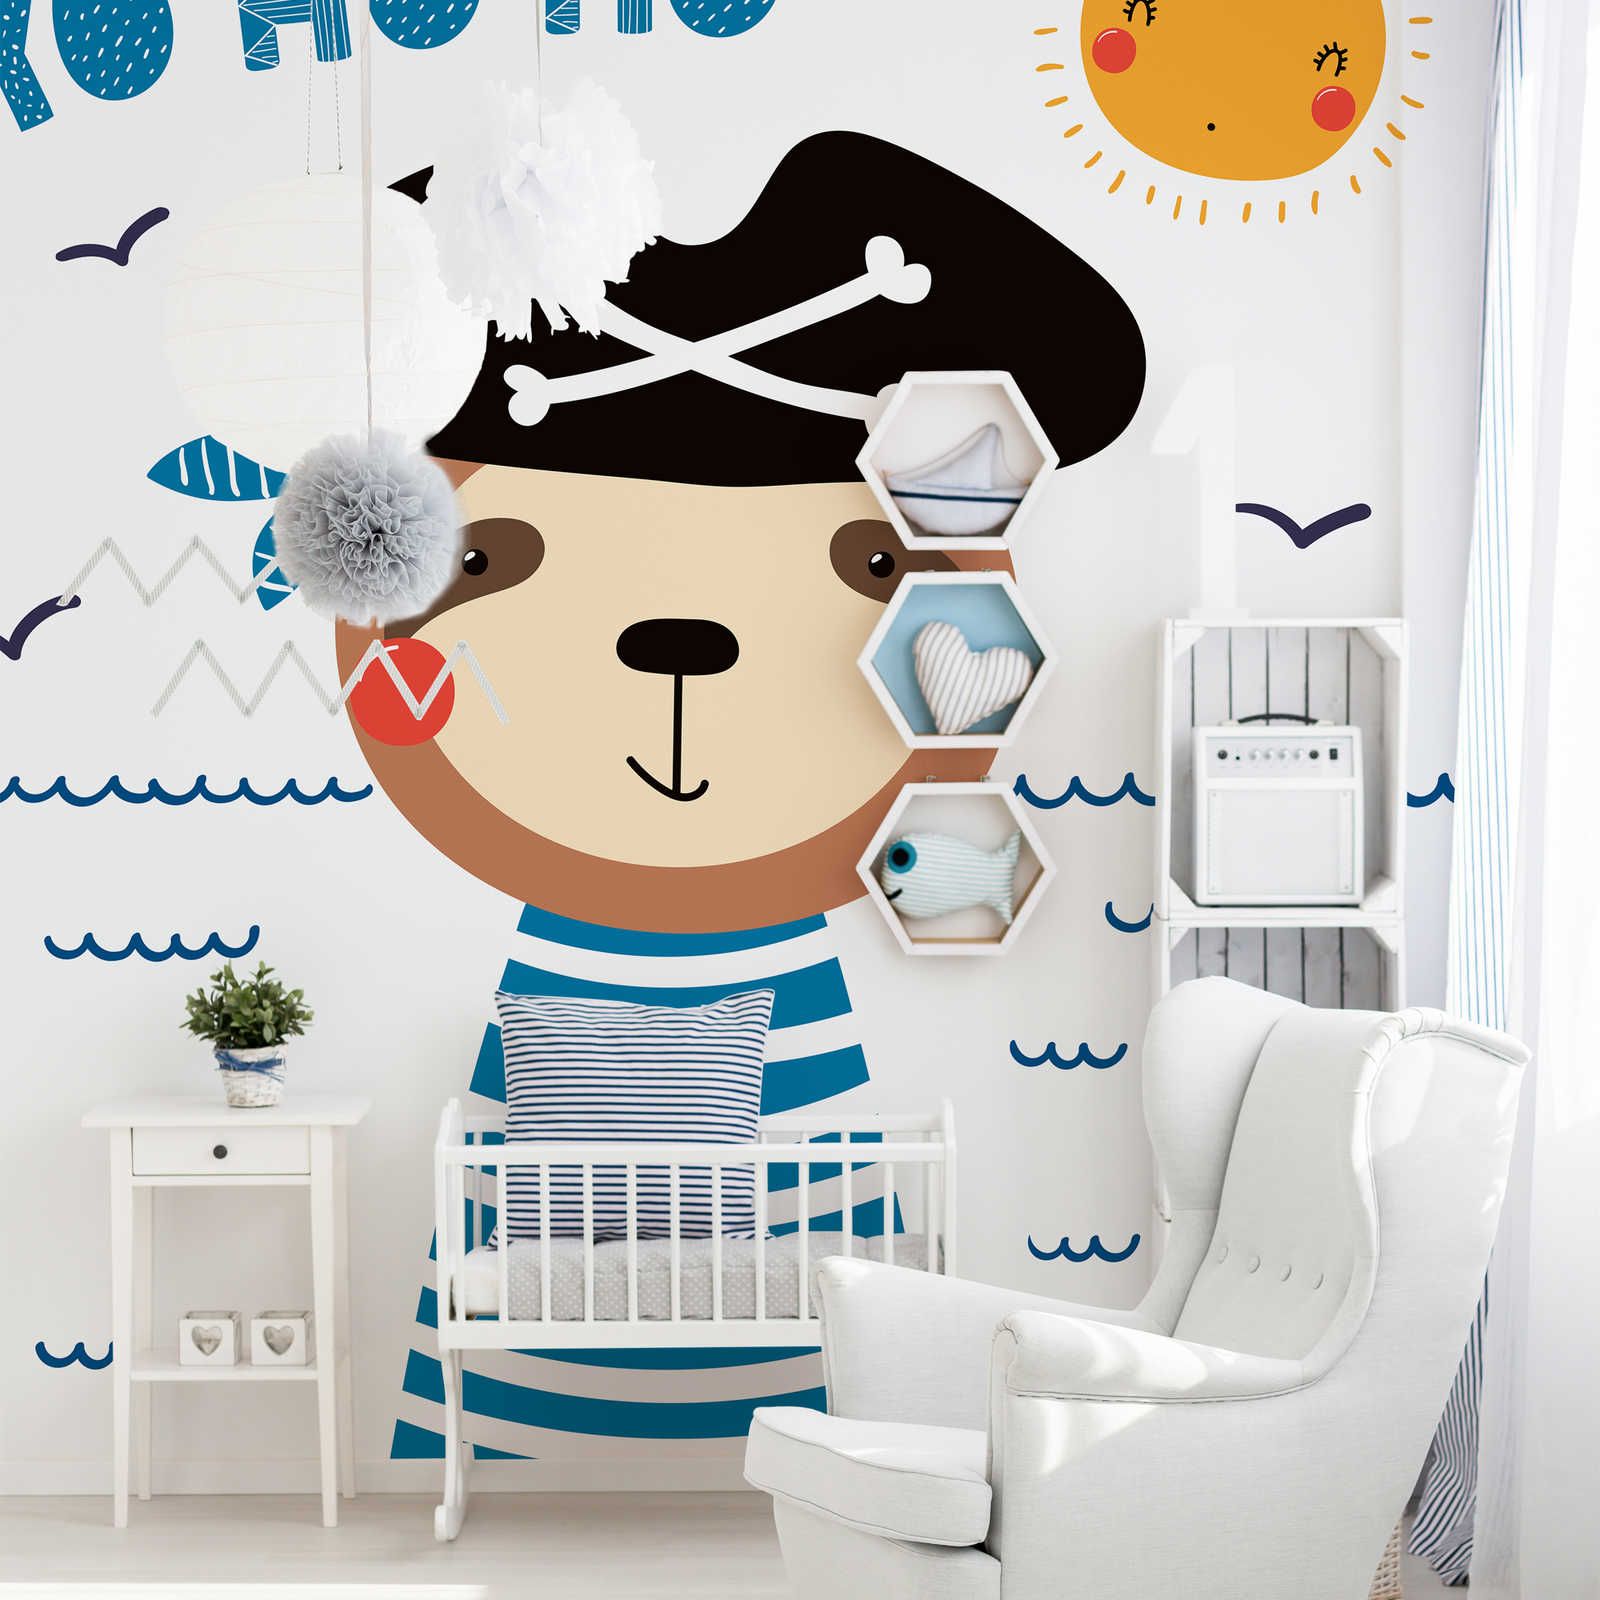 Fototapete fürs Kinderzimmer mit Bären-Pirat – Glattes & perlmutt-schimmerndes Vlies
